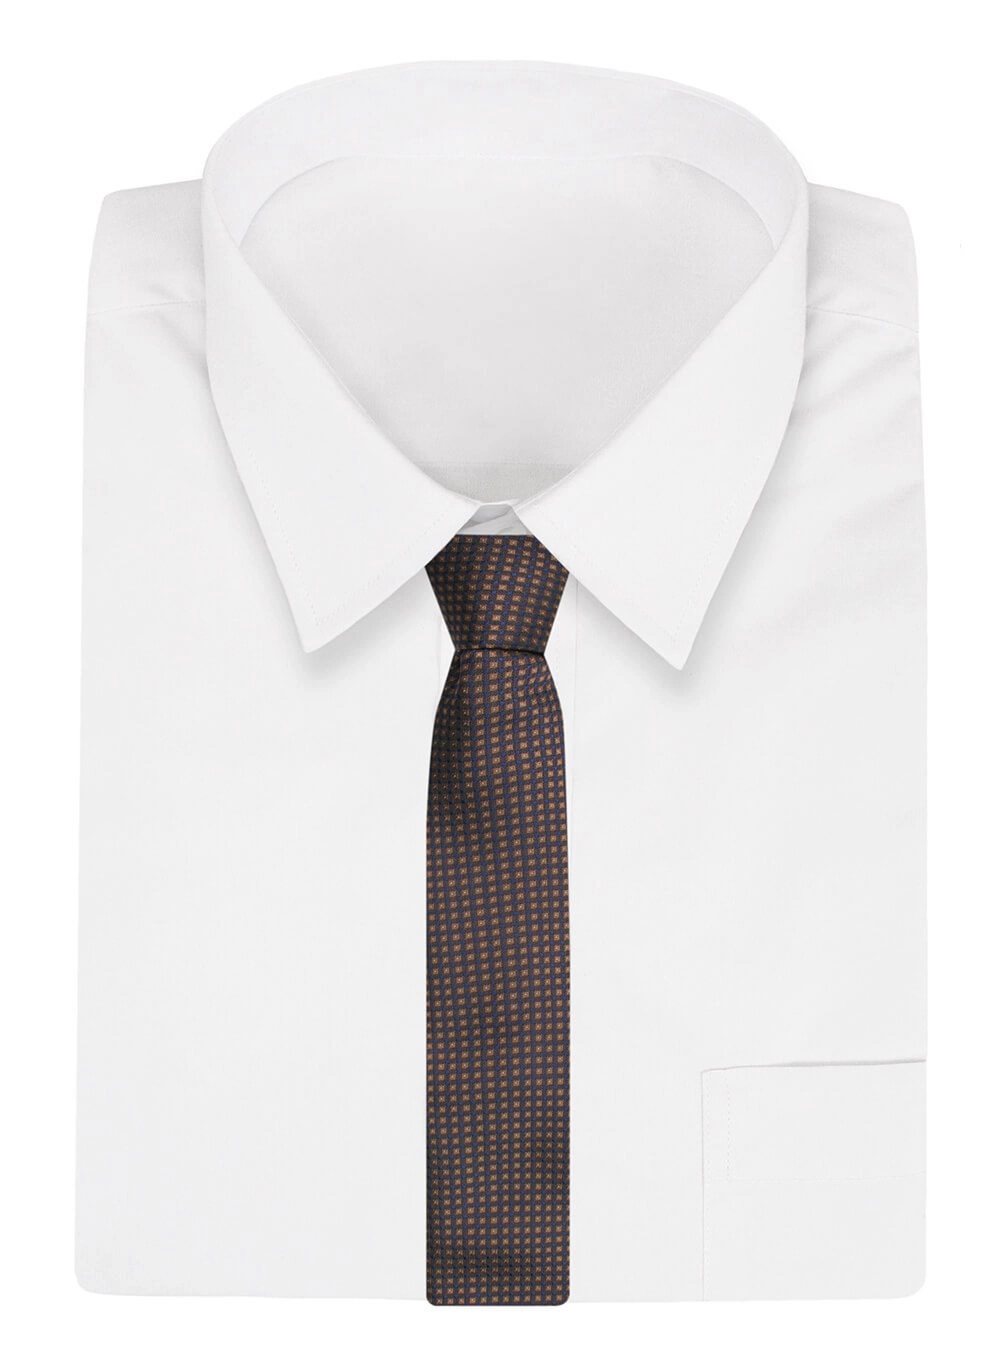 Krawat Alties (7 cm) - Brązowy w Drobny Wzór